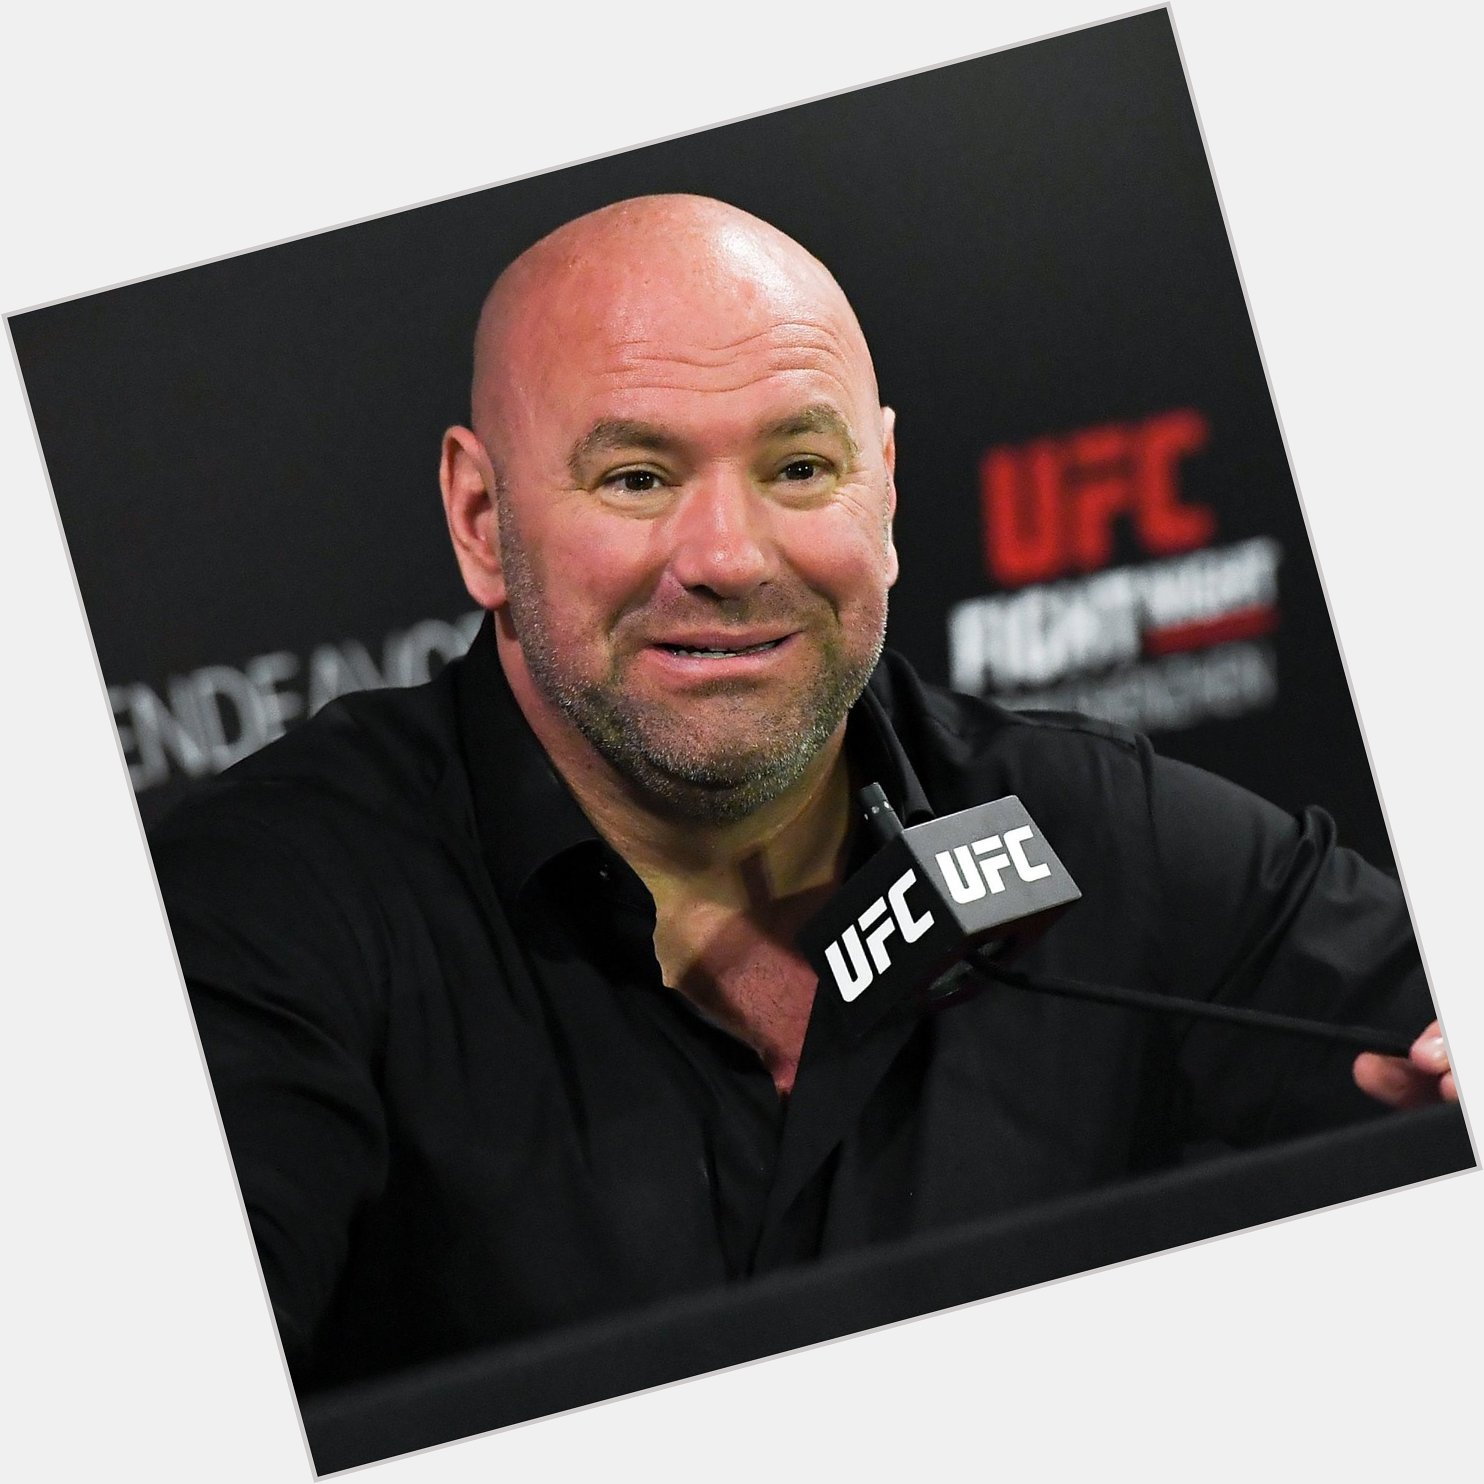  Happy Birthday to UFC president Dana White!  